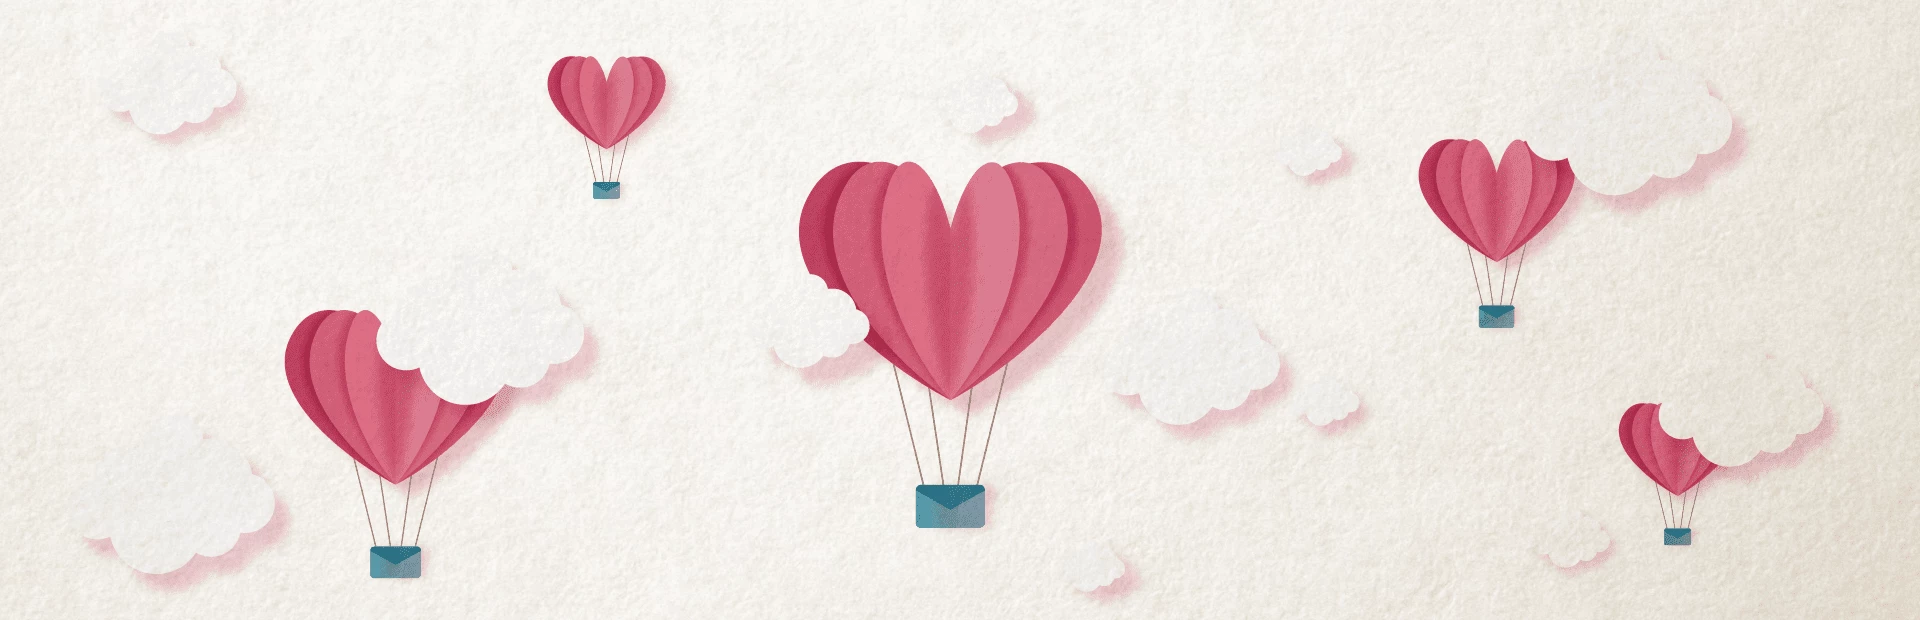 Idées comment créer un environnement romantique pour la Saint Valentin